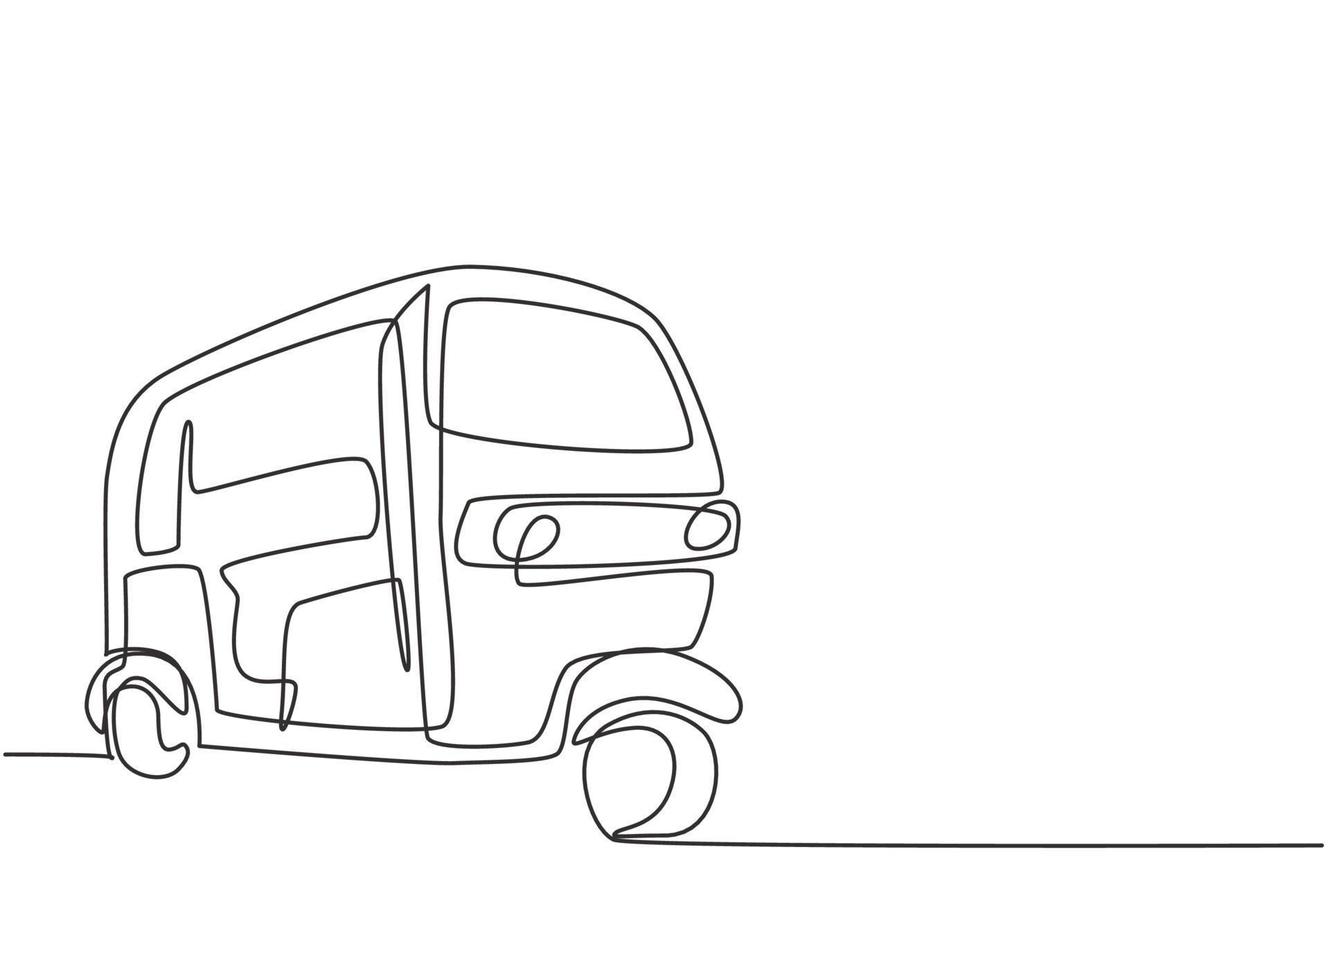 riquixá de desenho de linha contínua único transporte tradicional na índia que atende passageiros locais e turistas estrangeiros em férias. uma linha desenhar ilustração em vetor design gráfico.